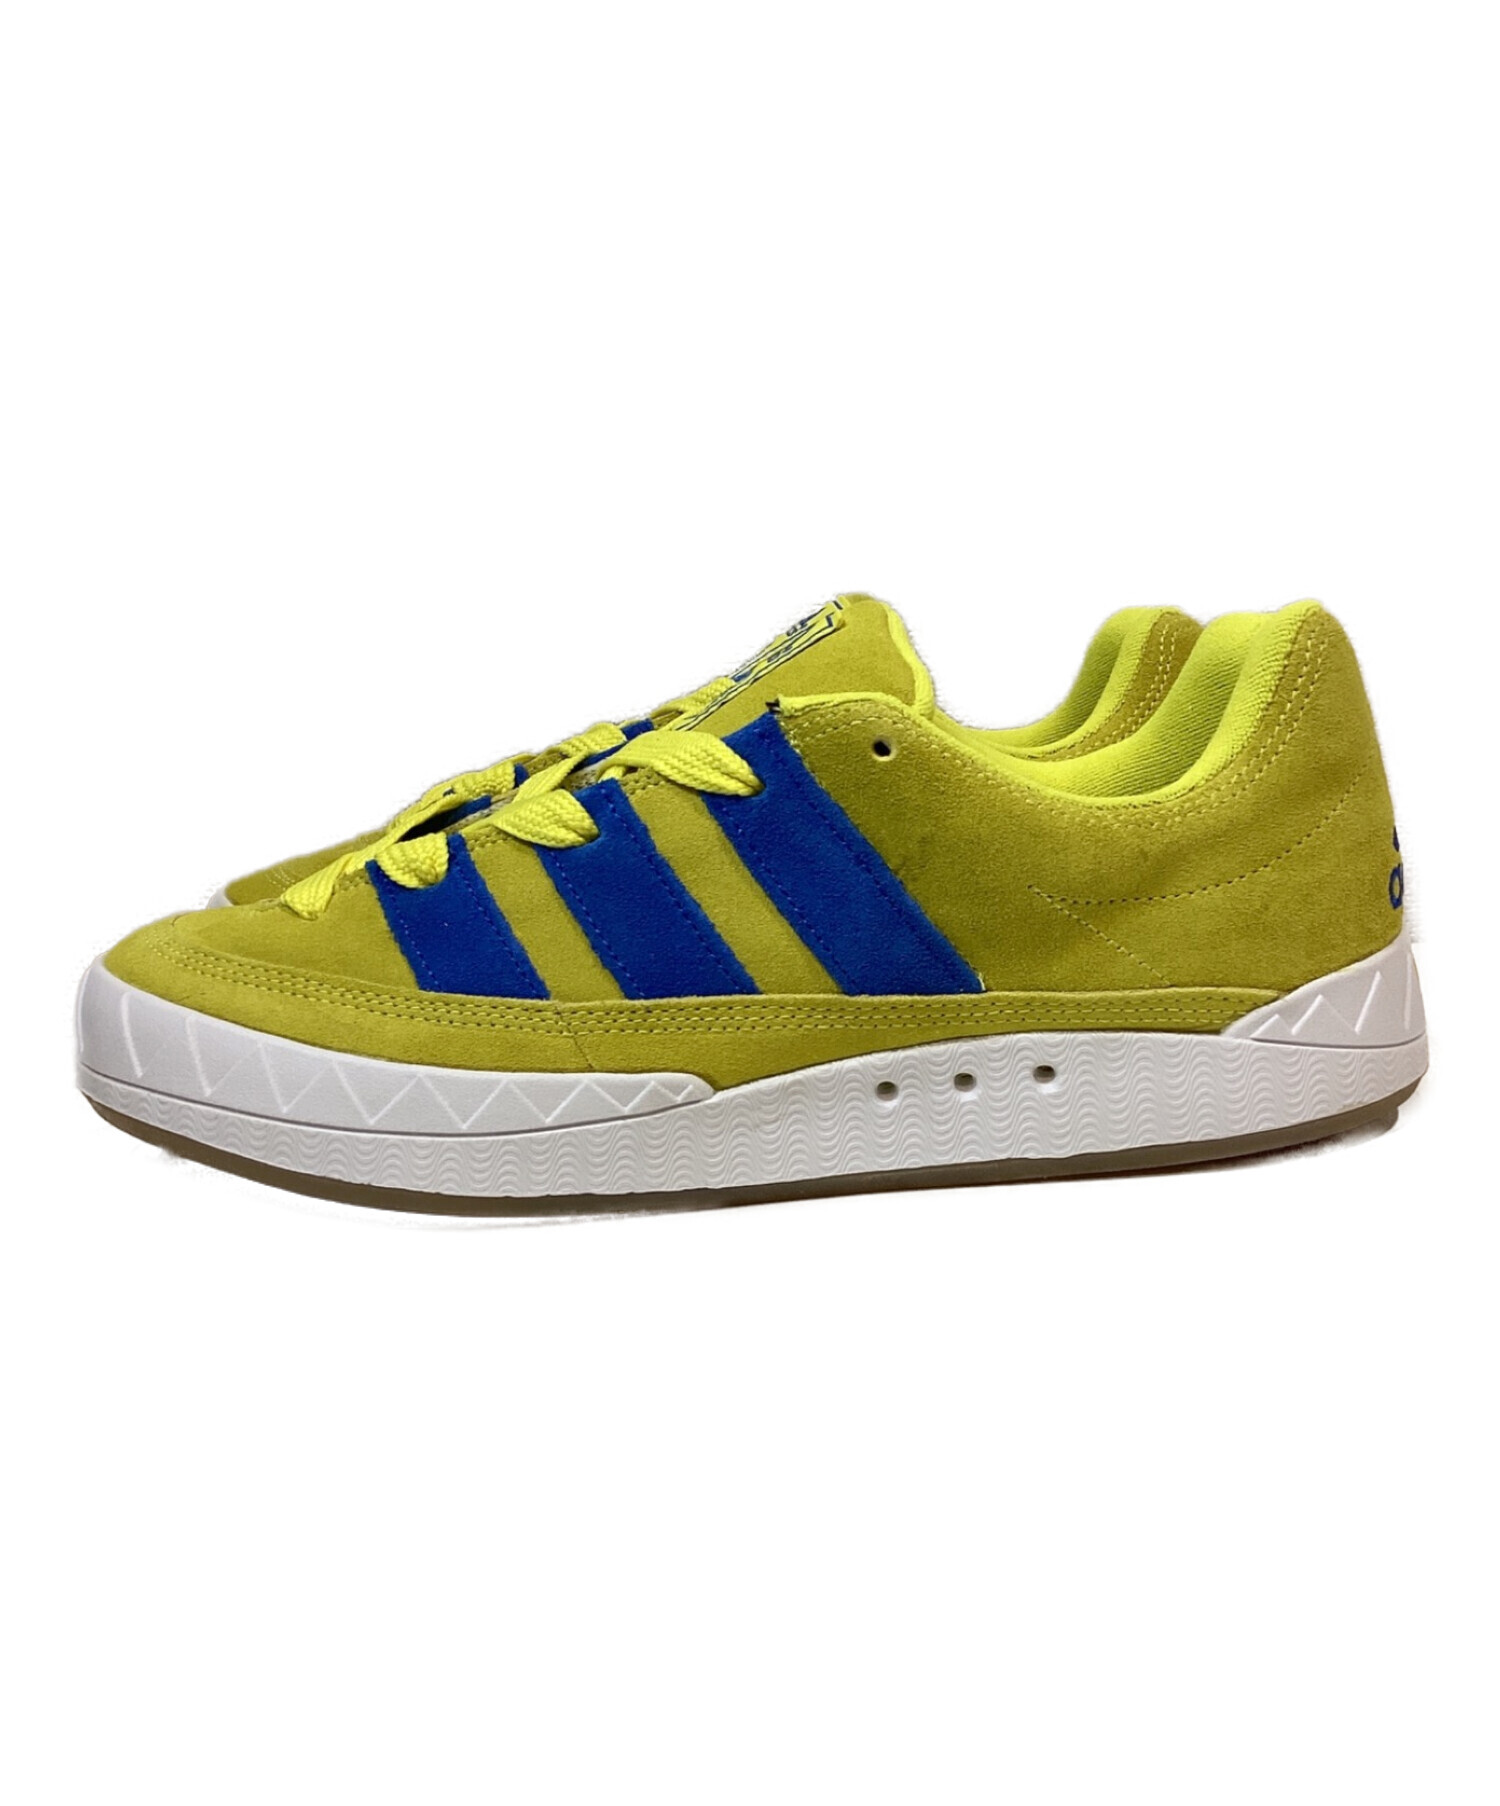 adidas (アディダス) Adimatic Bright Yellow イエロー サイズ:28.5